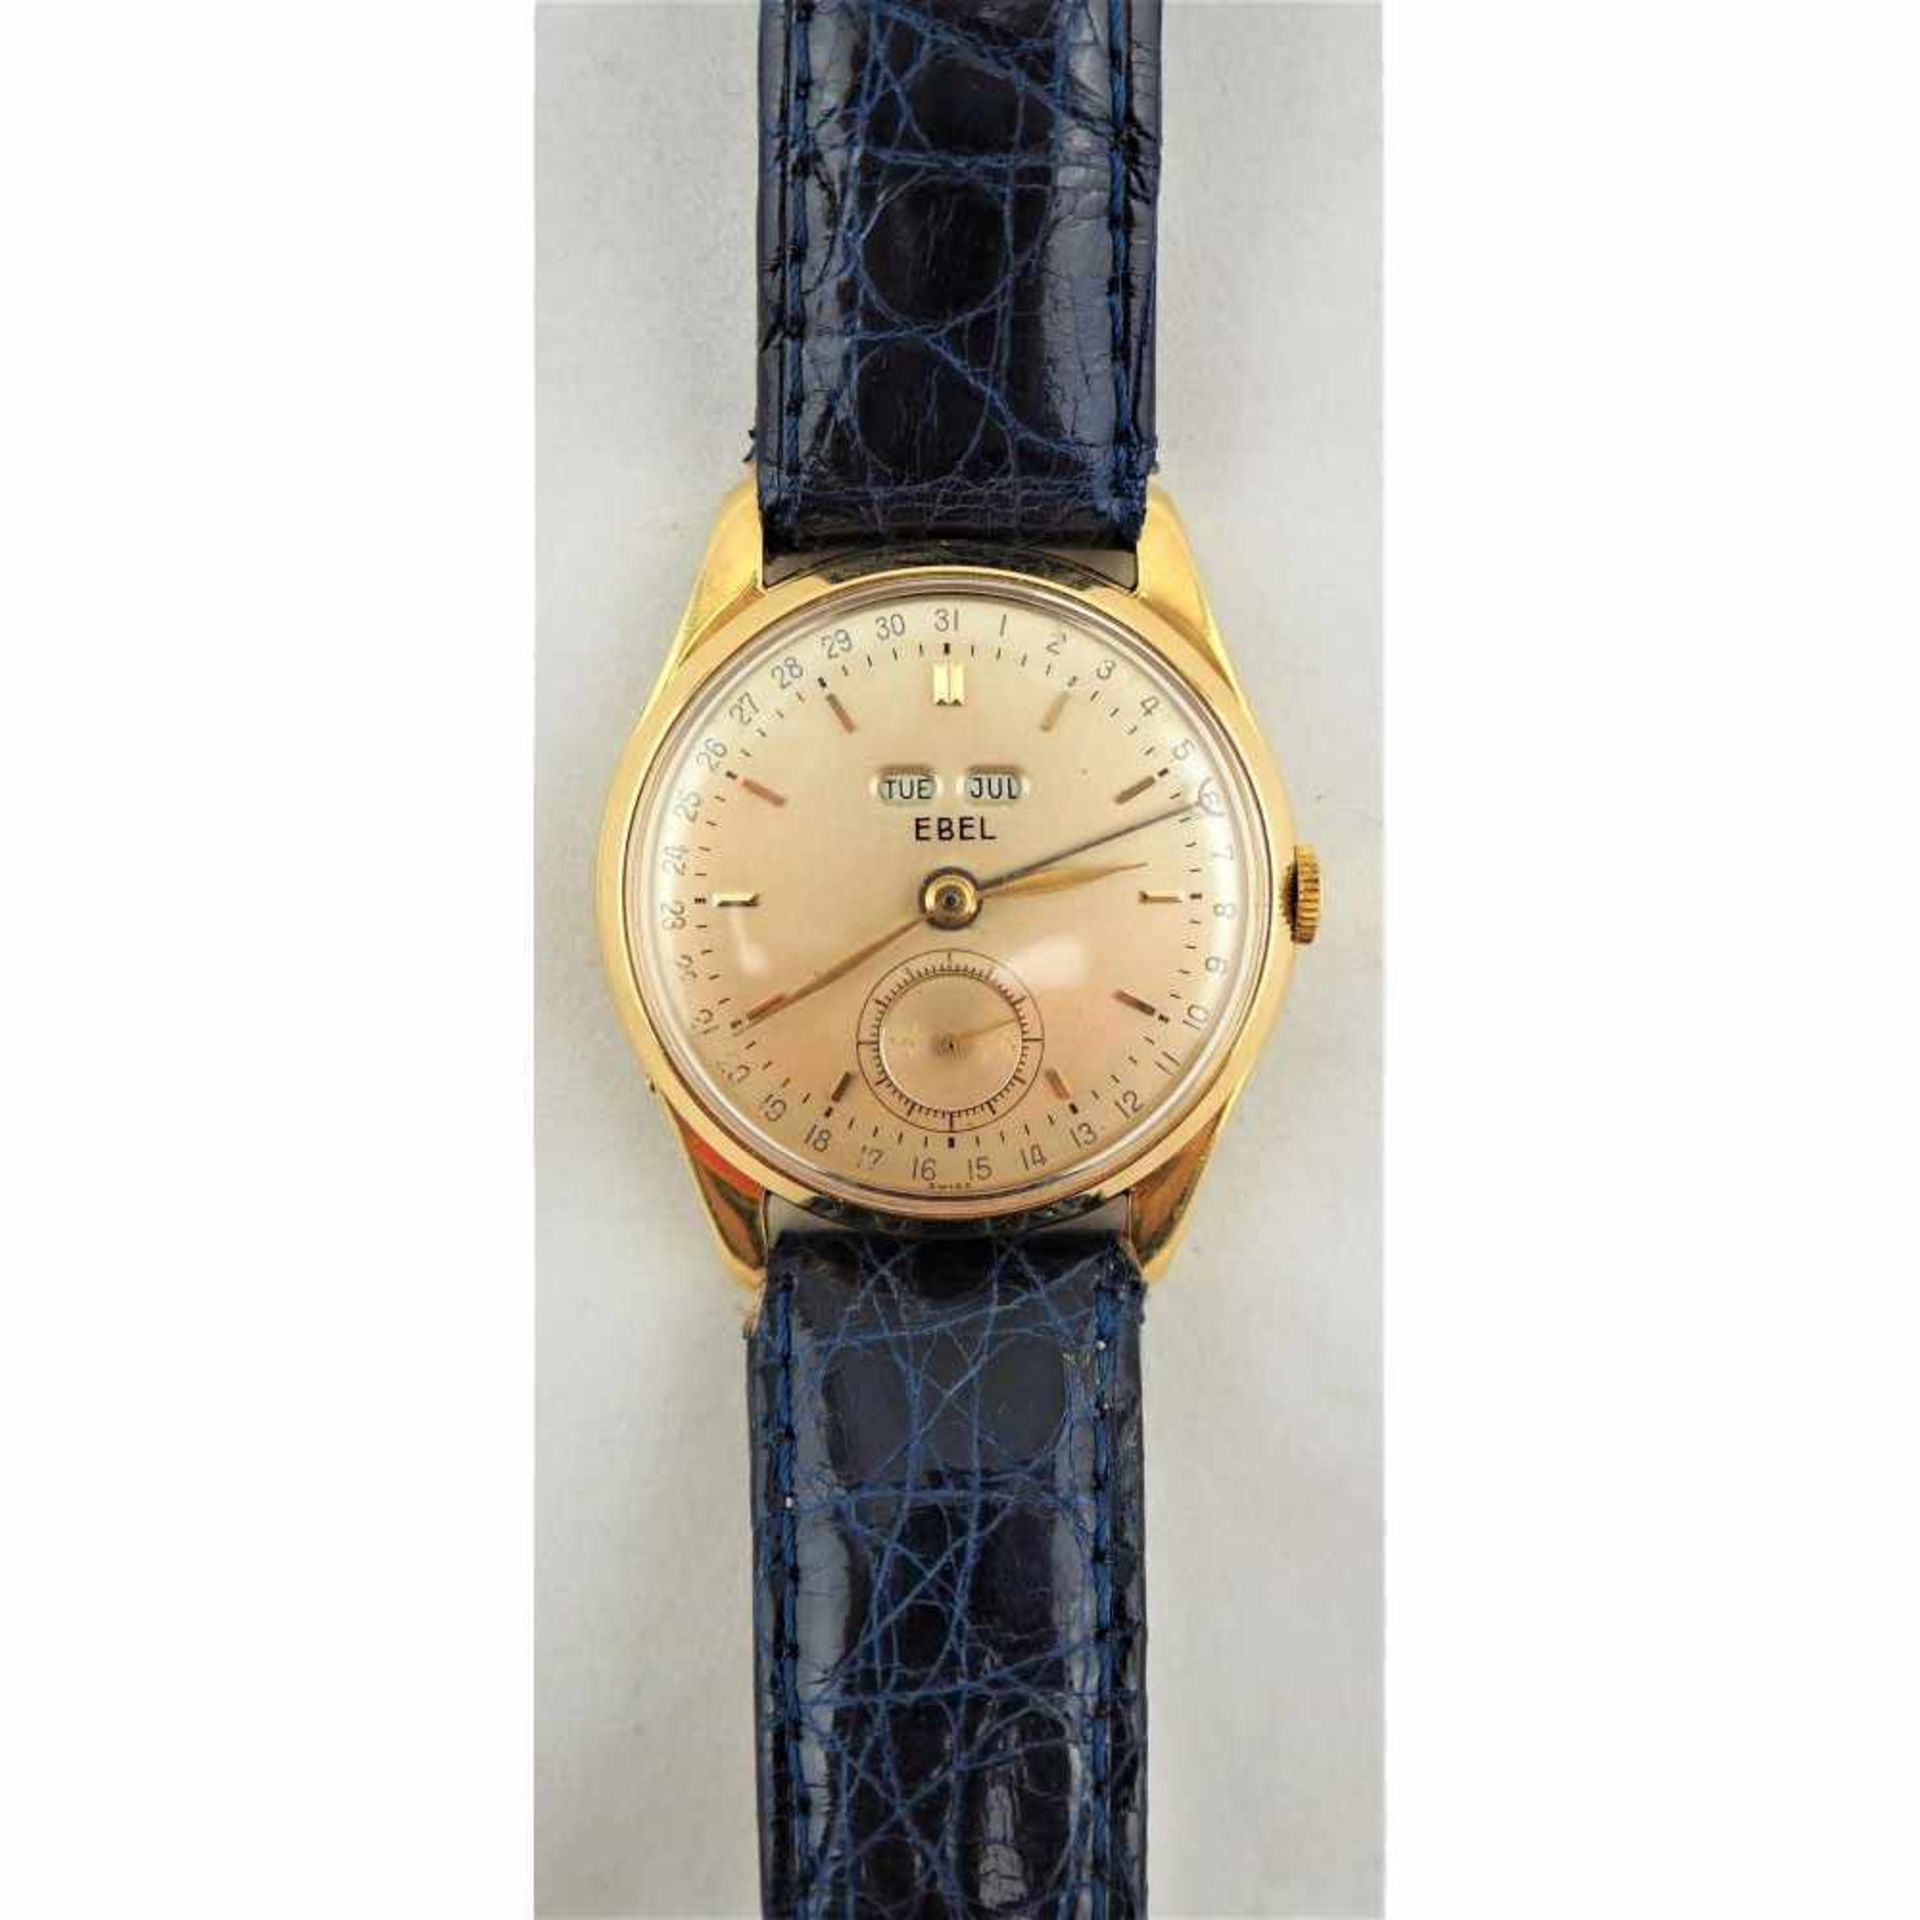 Herrenarmbanduhr "EBEL" Vollkalender, 60er JahreSeltene Armbanduhr des Schweizer Herstellers "